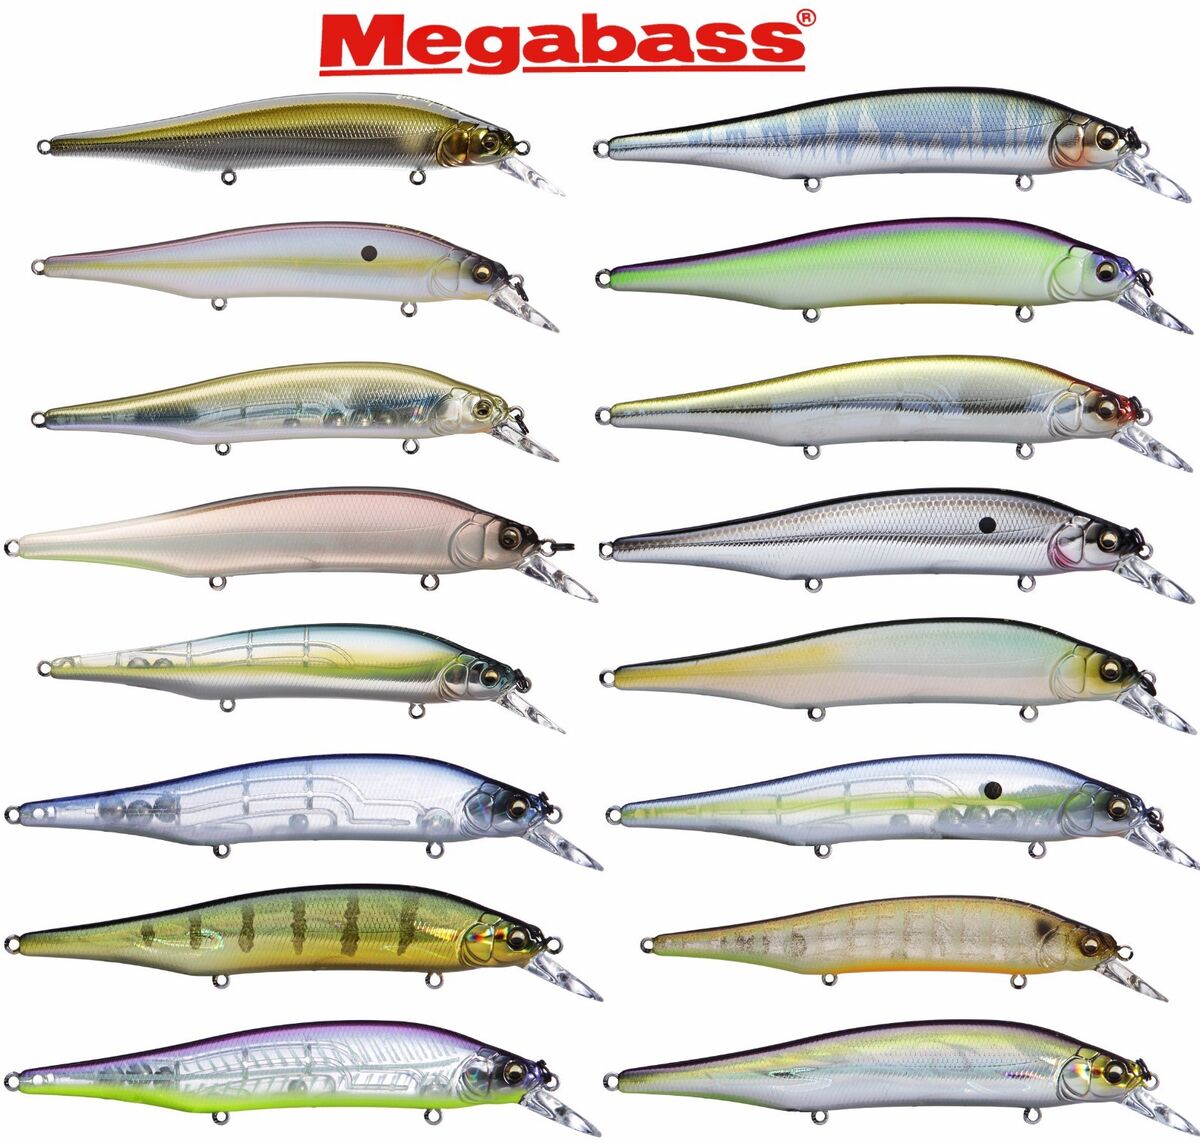 Megabass Ito Shiner 4 1/2 inch Premium Japanese Jerkbait - Bass Fishing Lure